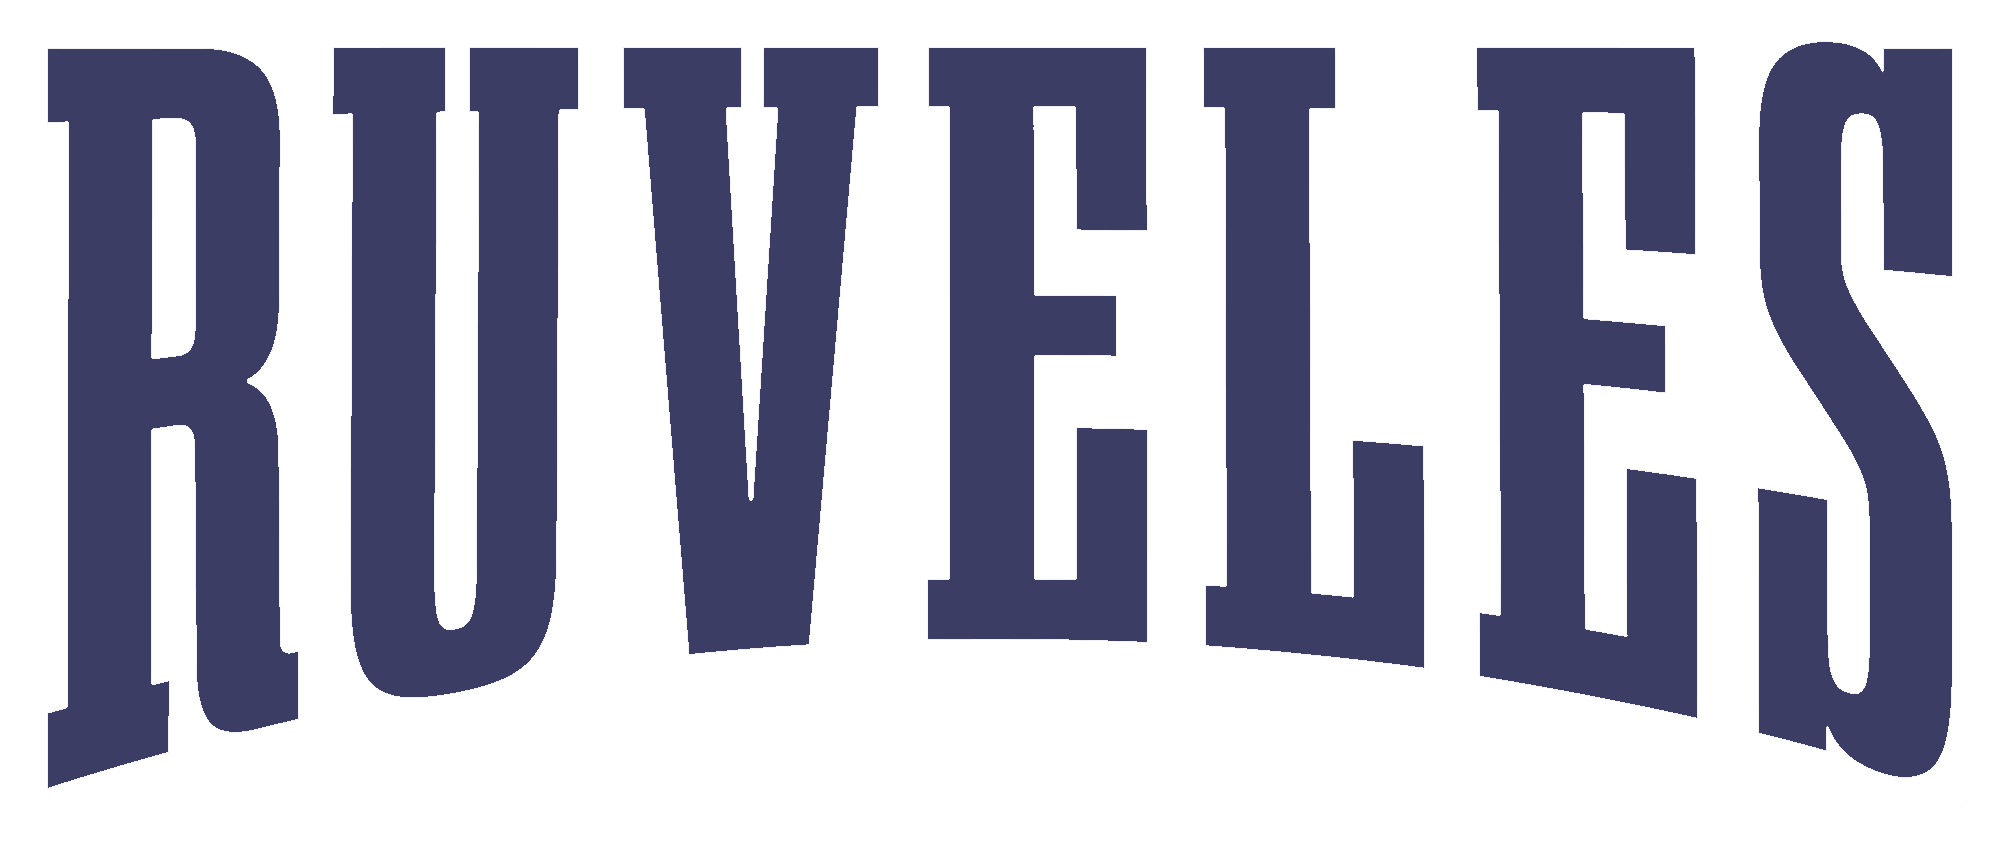 ООО Русвелес Логотип(logo)